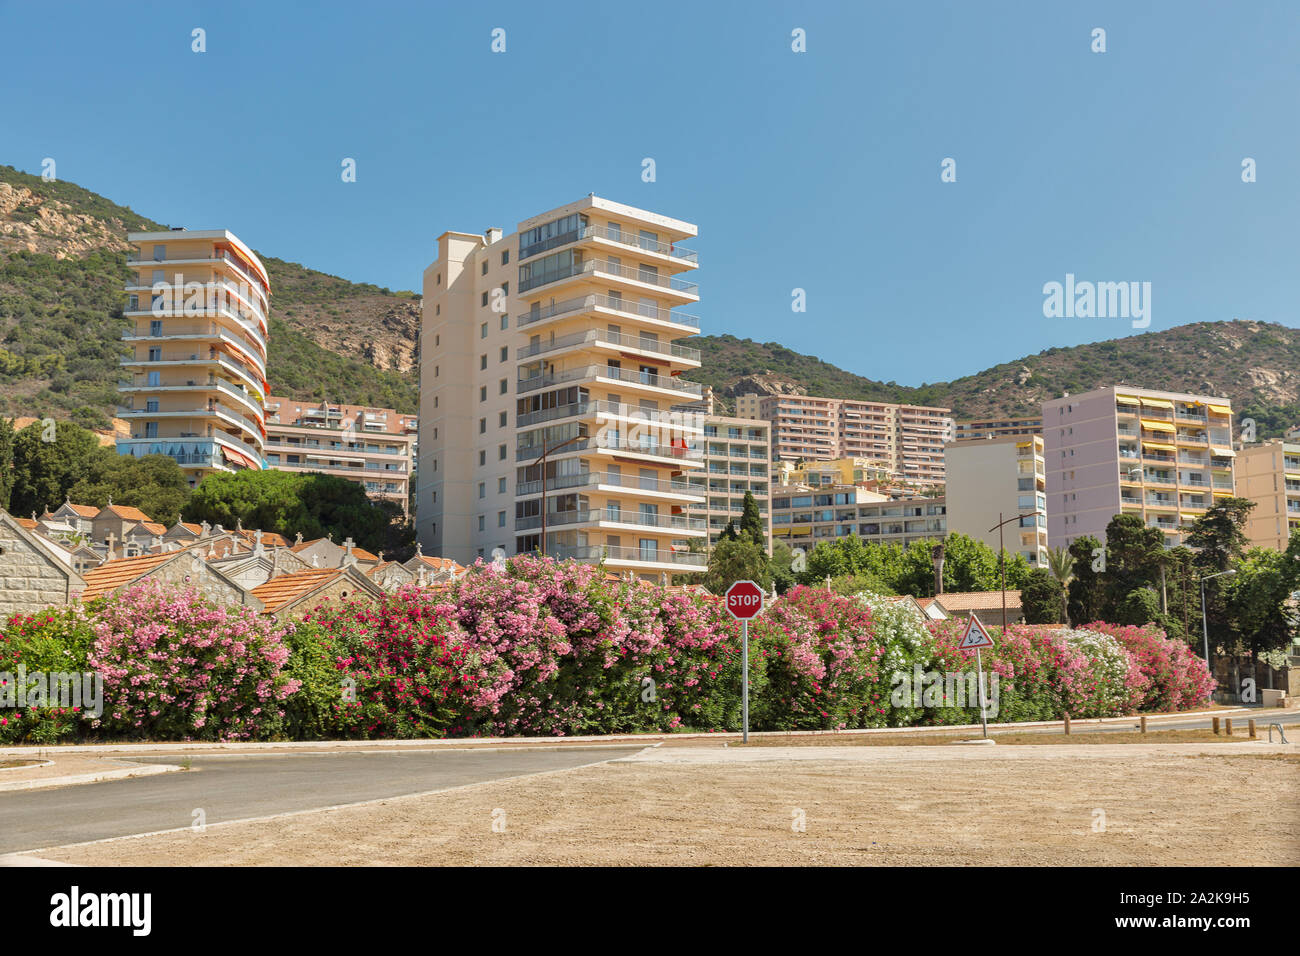 Edifici del quartiere residenziale vicino al vecchio cimitero. Ajaccio, Corsica, Francia. Foto Stock